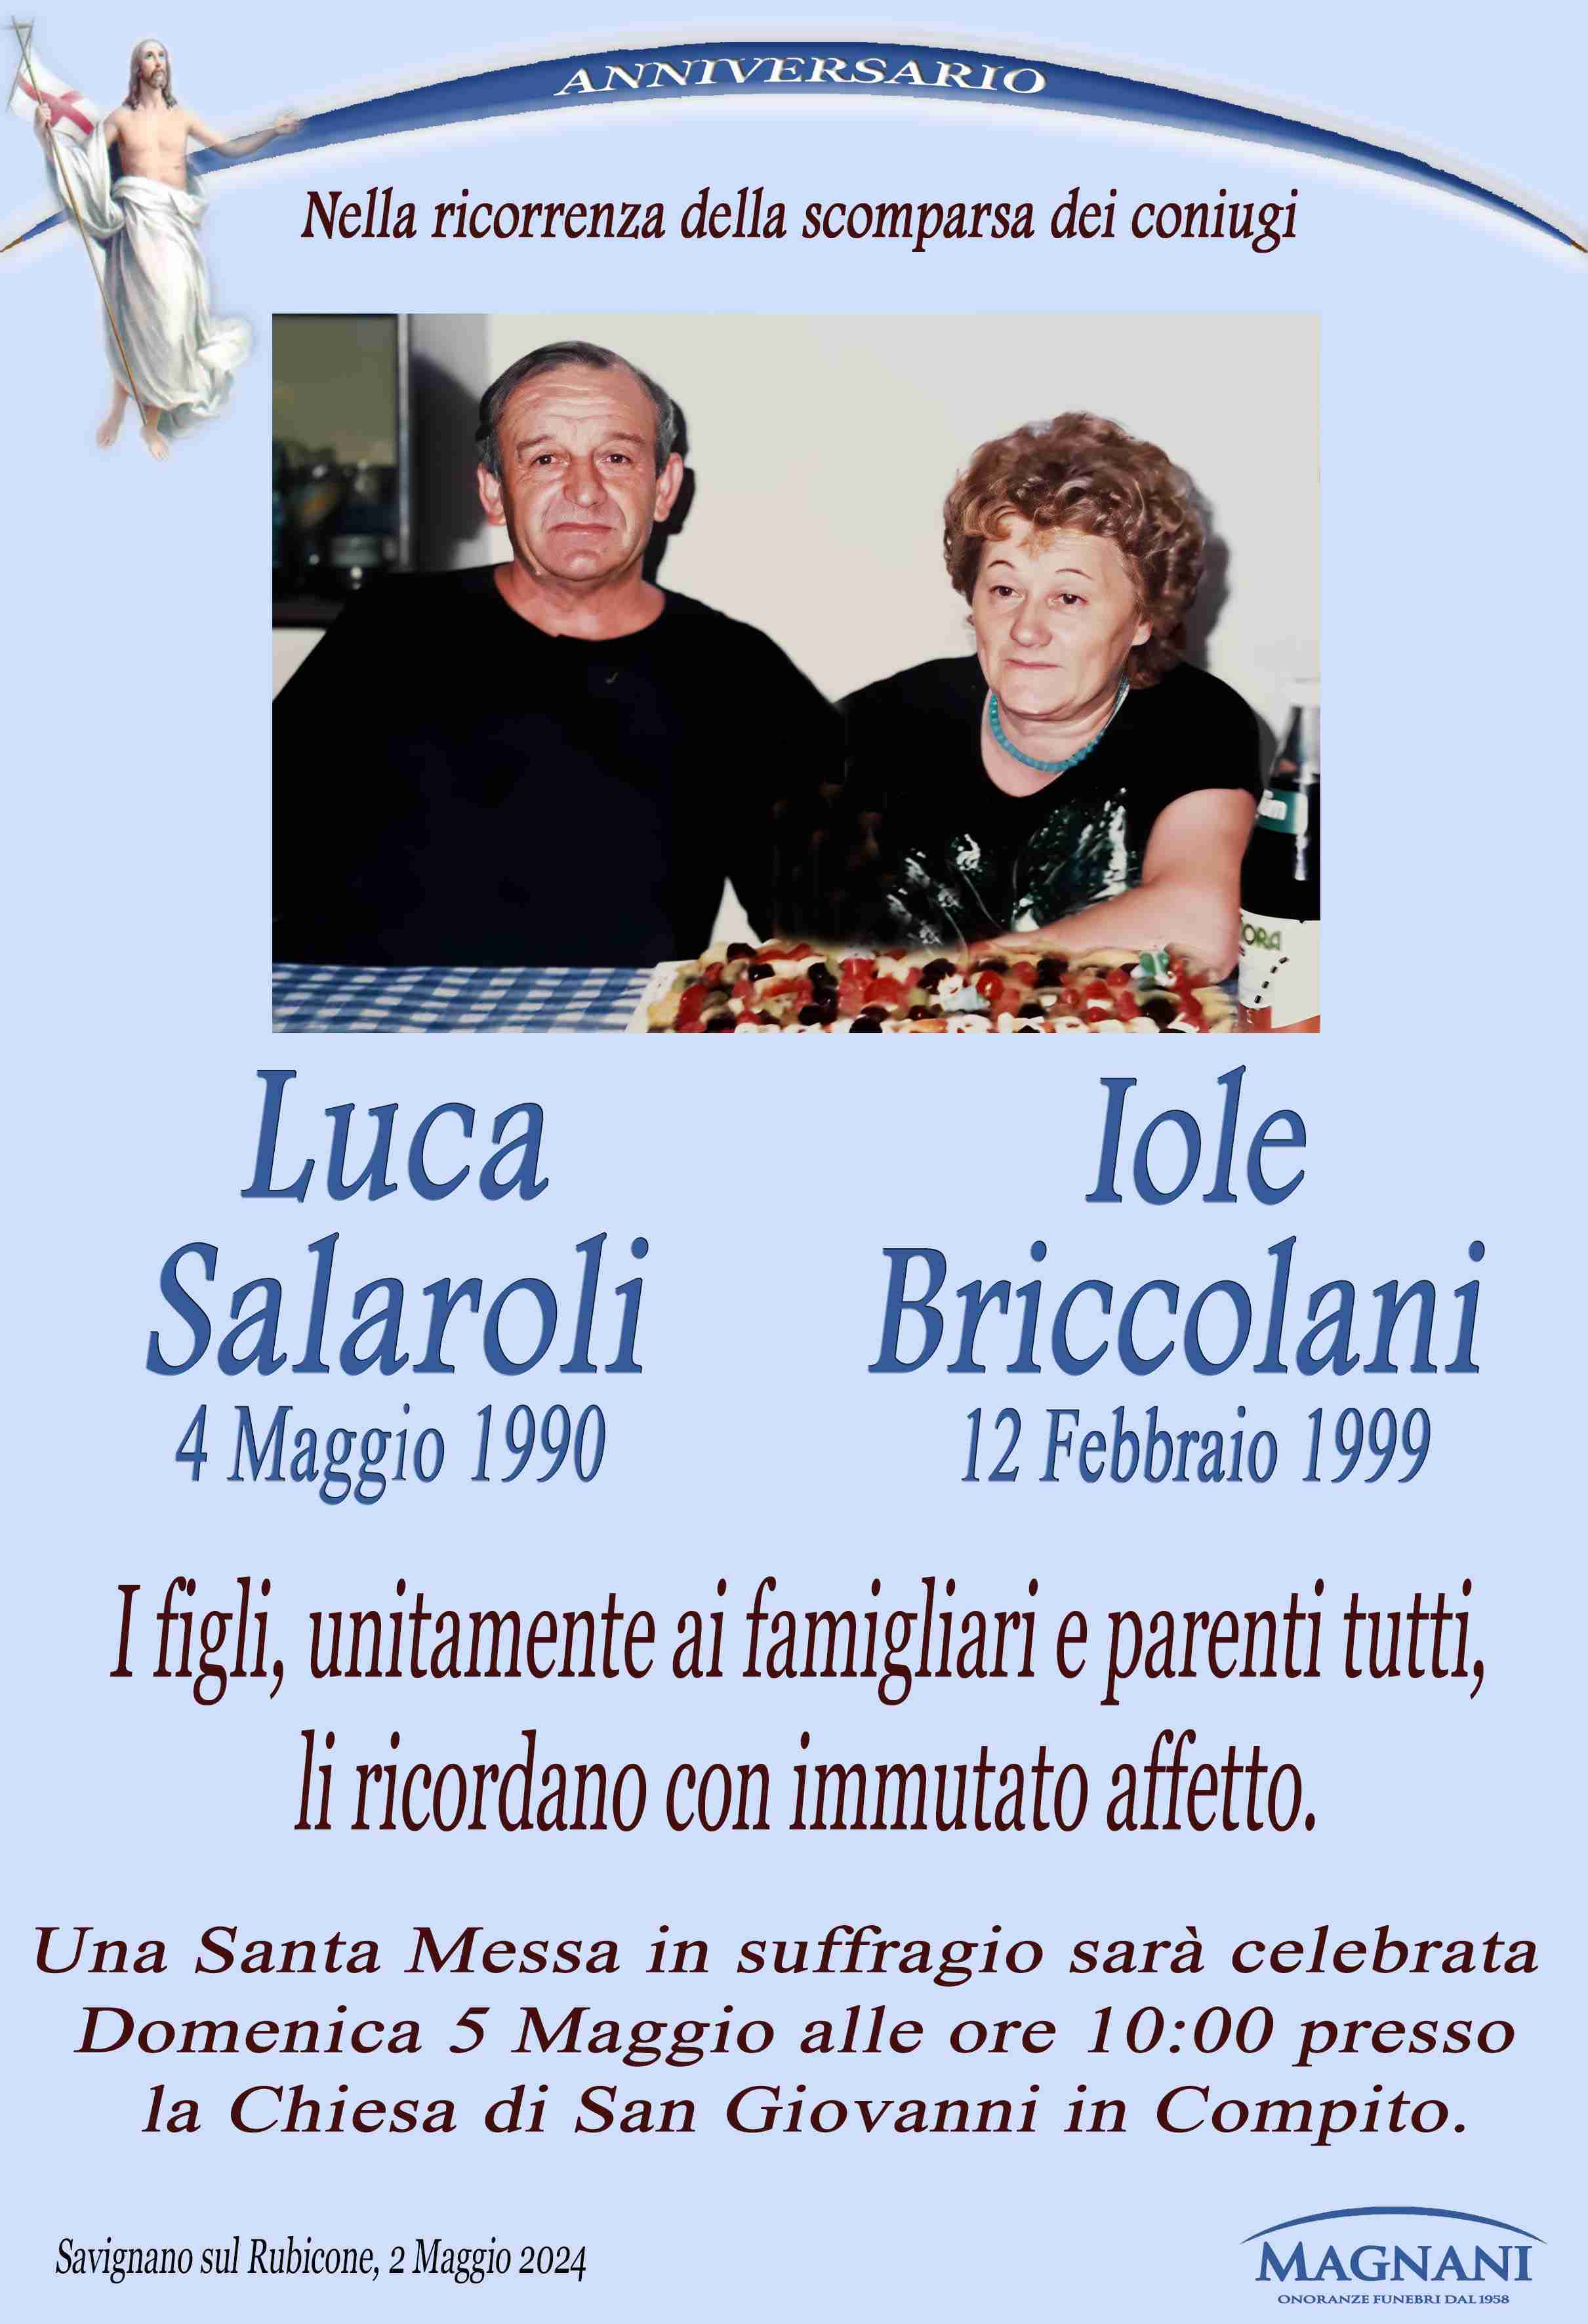 Luca Salaroli e Iole Briccolani